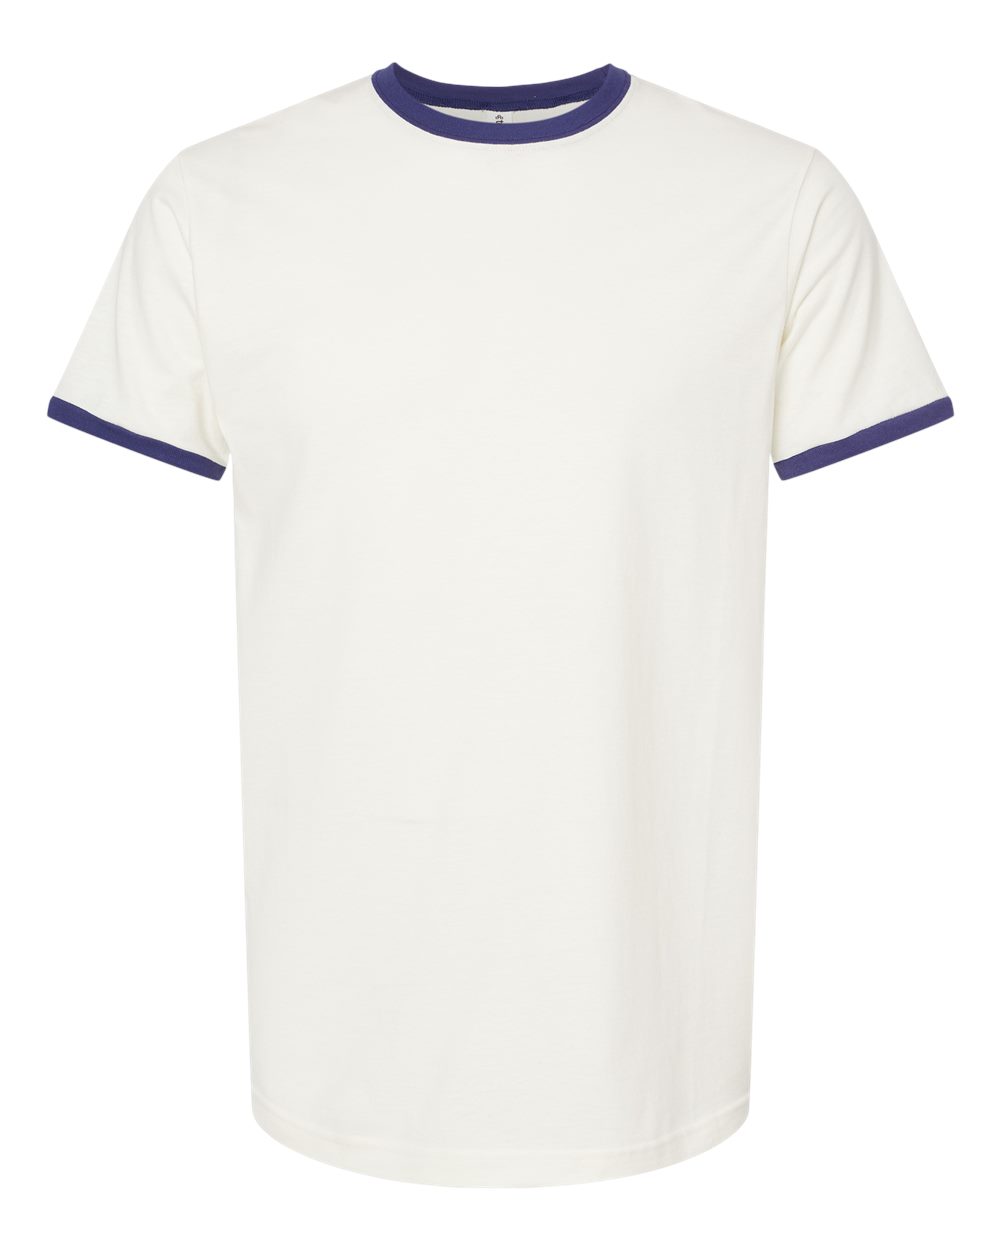 Tultex Men Short Sleeve Fine Jersey Ringer T-Shirt 246 Up To 3XL | eBay